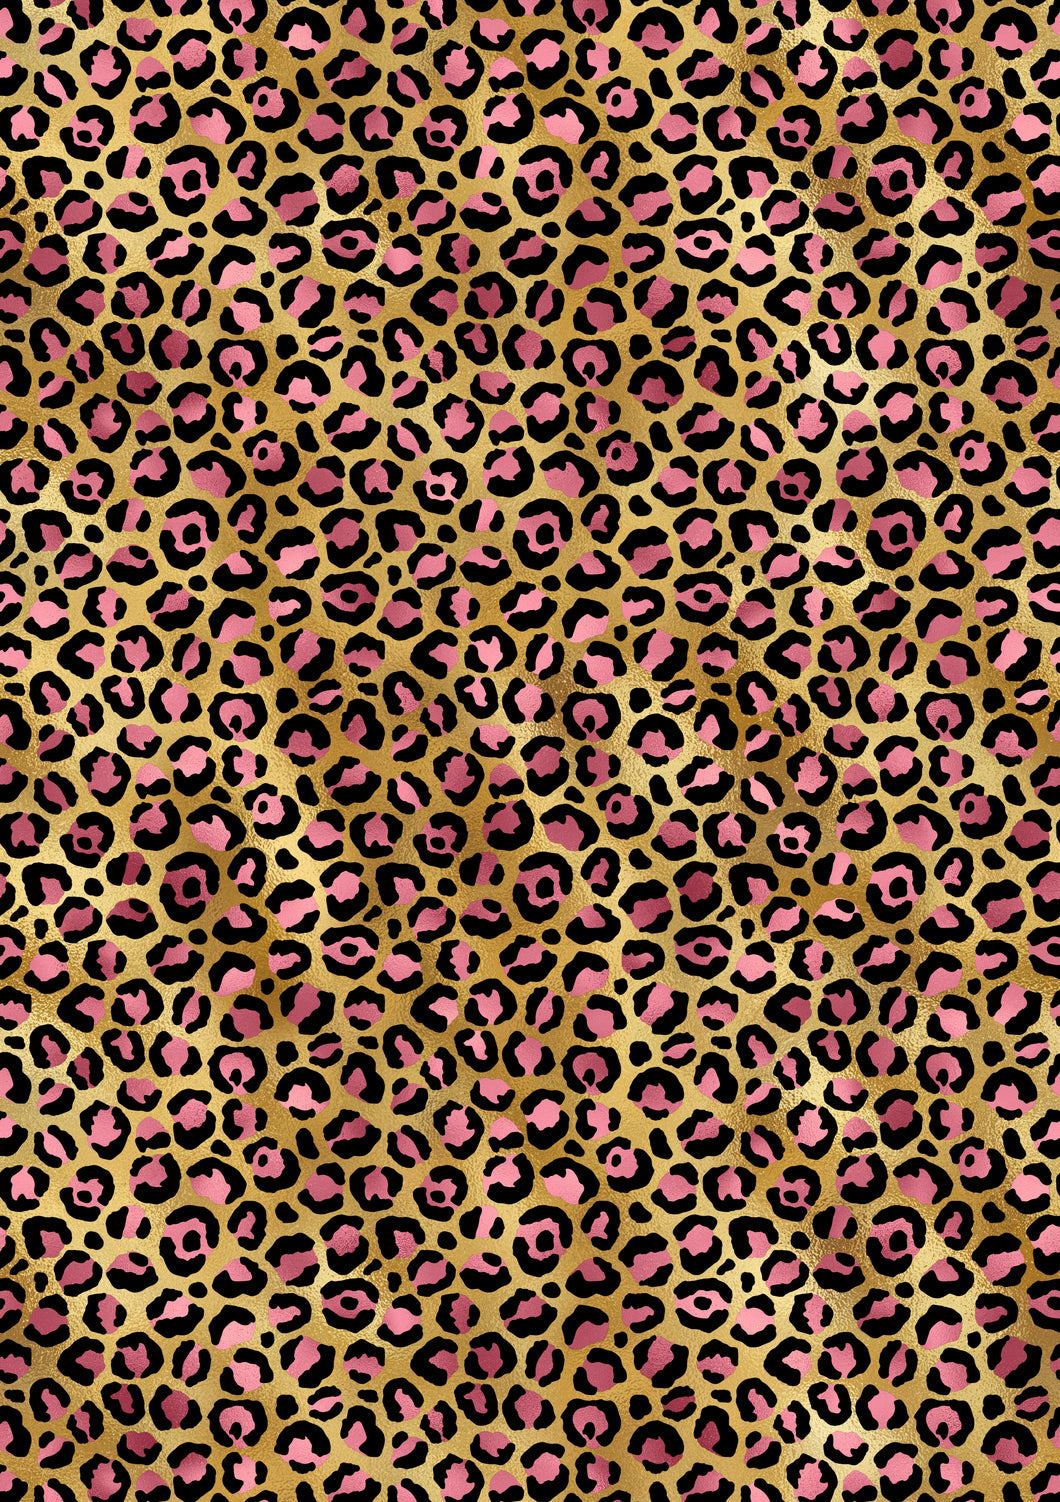 Pink & Teal Jaguar printed patterned HTV & Vinyl